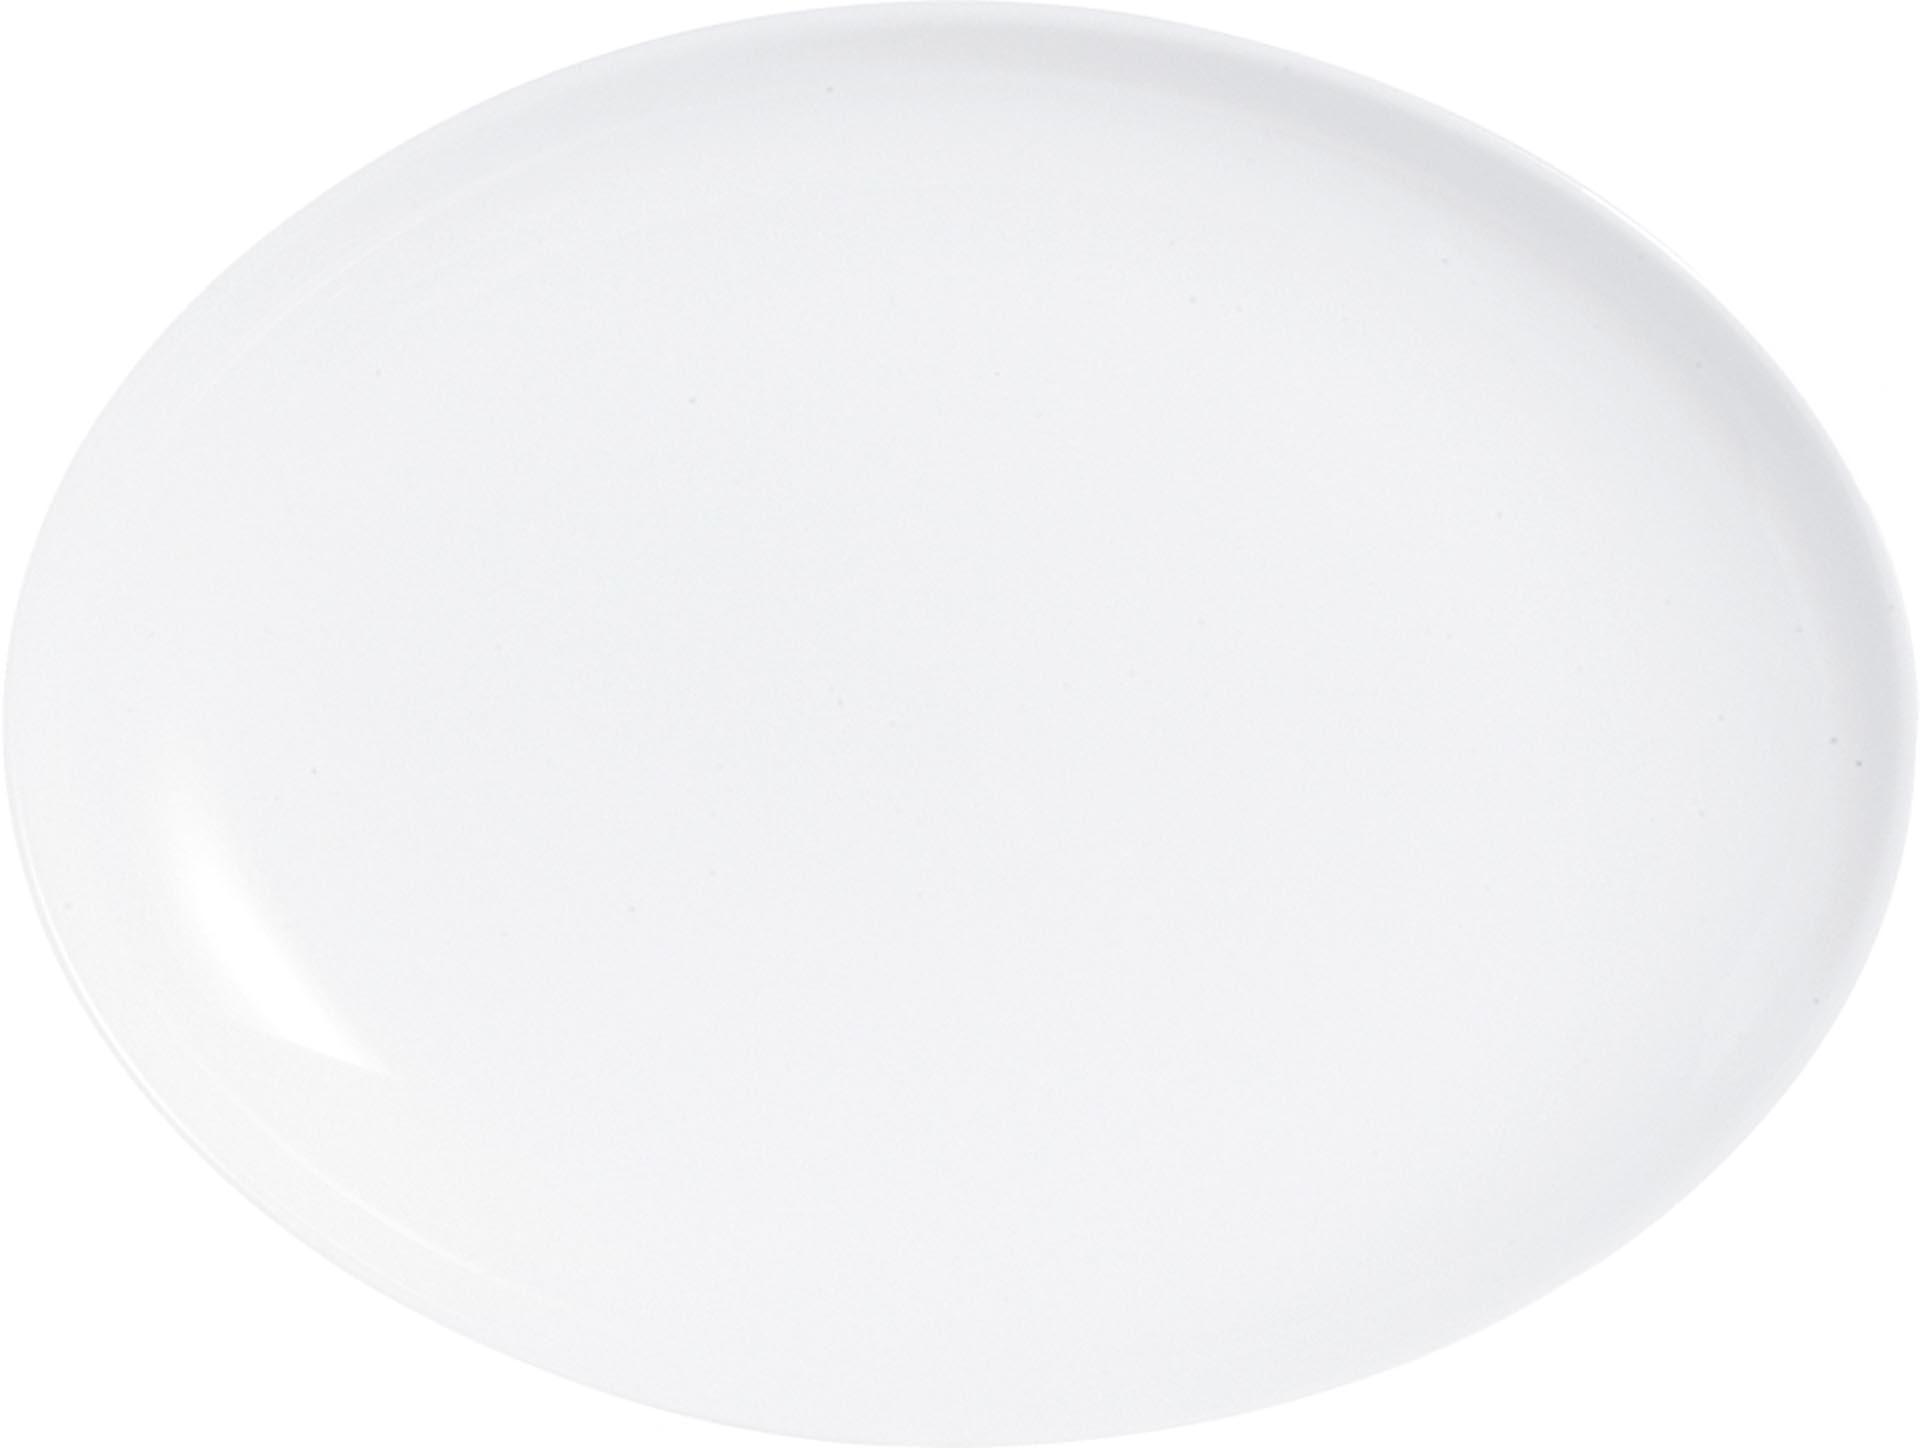 Hartglasgeschirr "Evolution" weiß Platte flach oval 33x25 cm